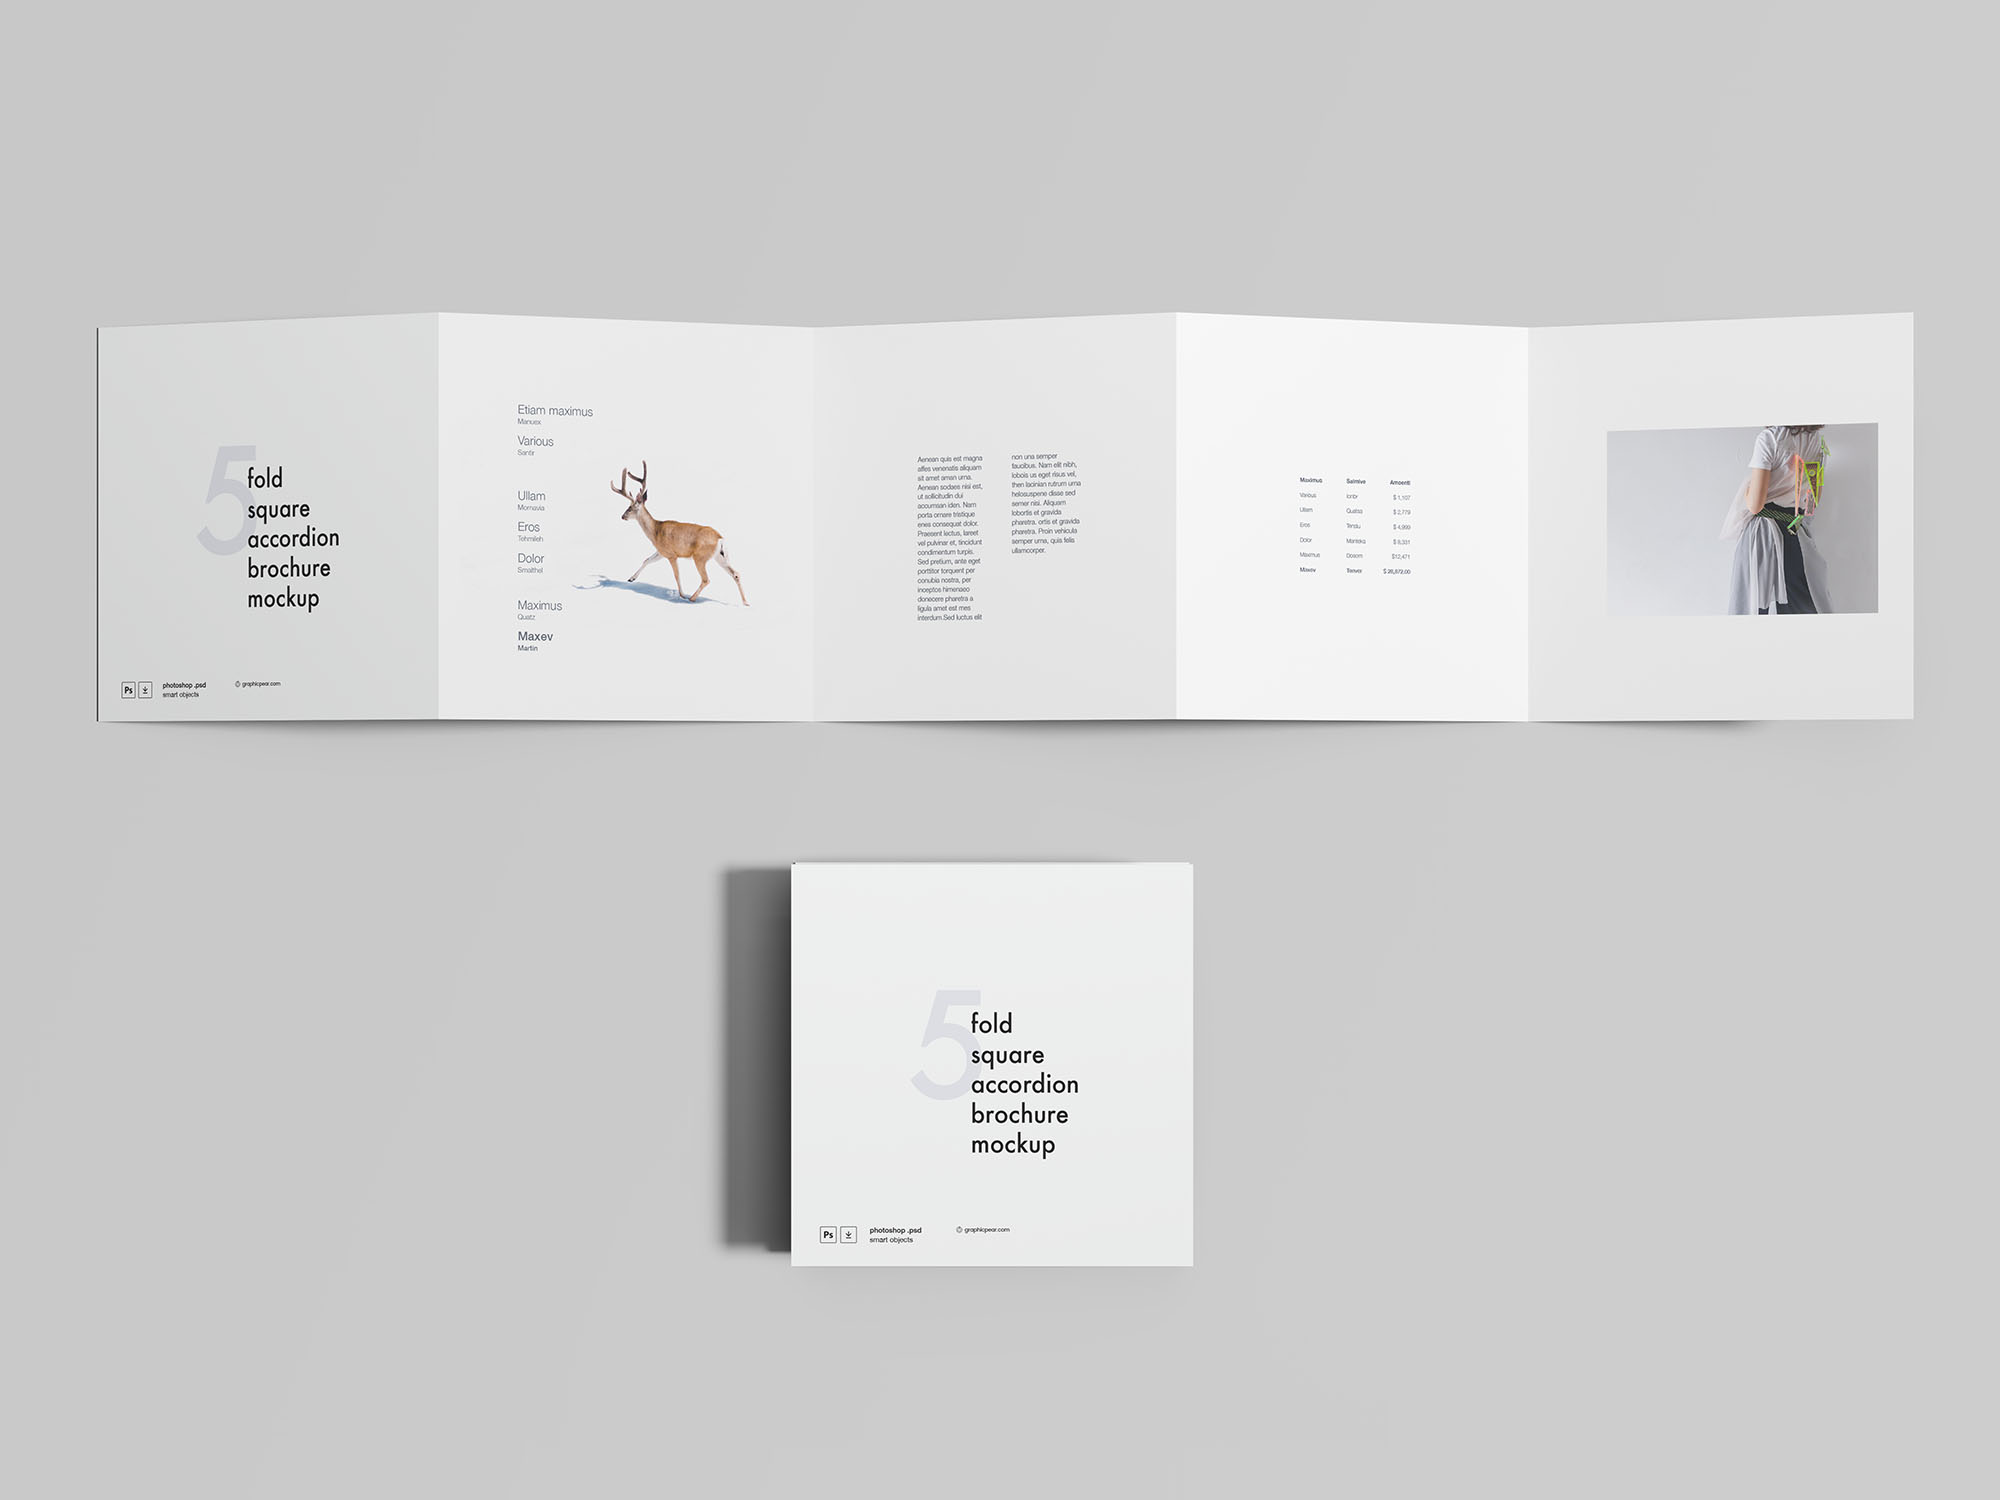 5折方形手风琴折叠式宣传册设计效果图样机 5 Fold Square Accordion Brochure Mockup插图